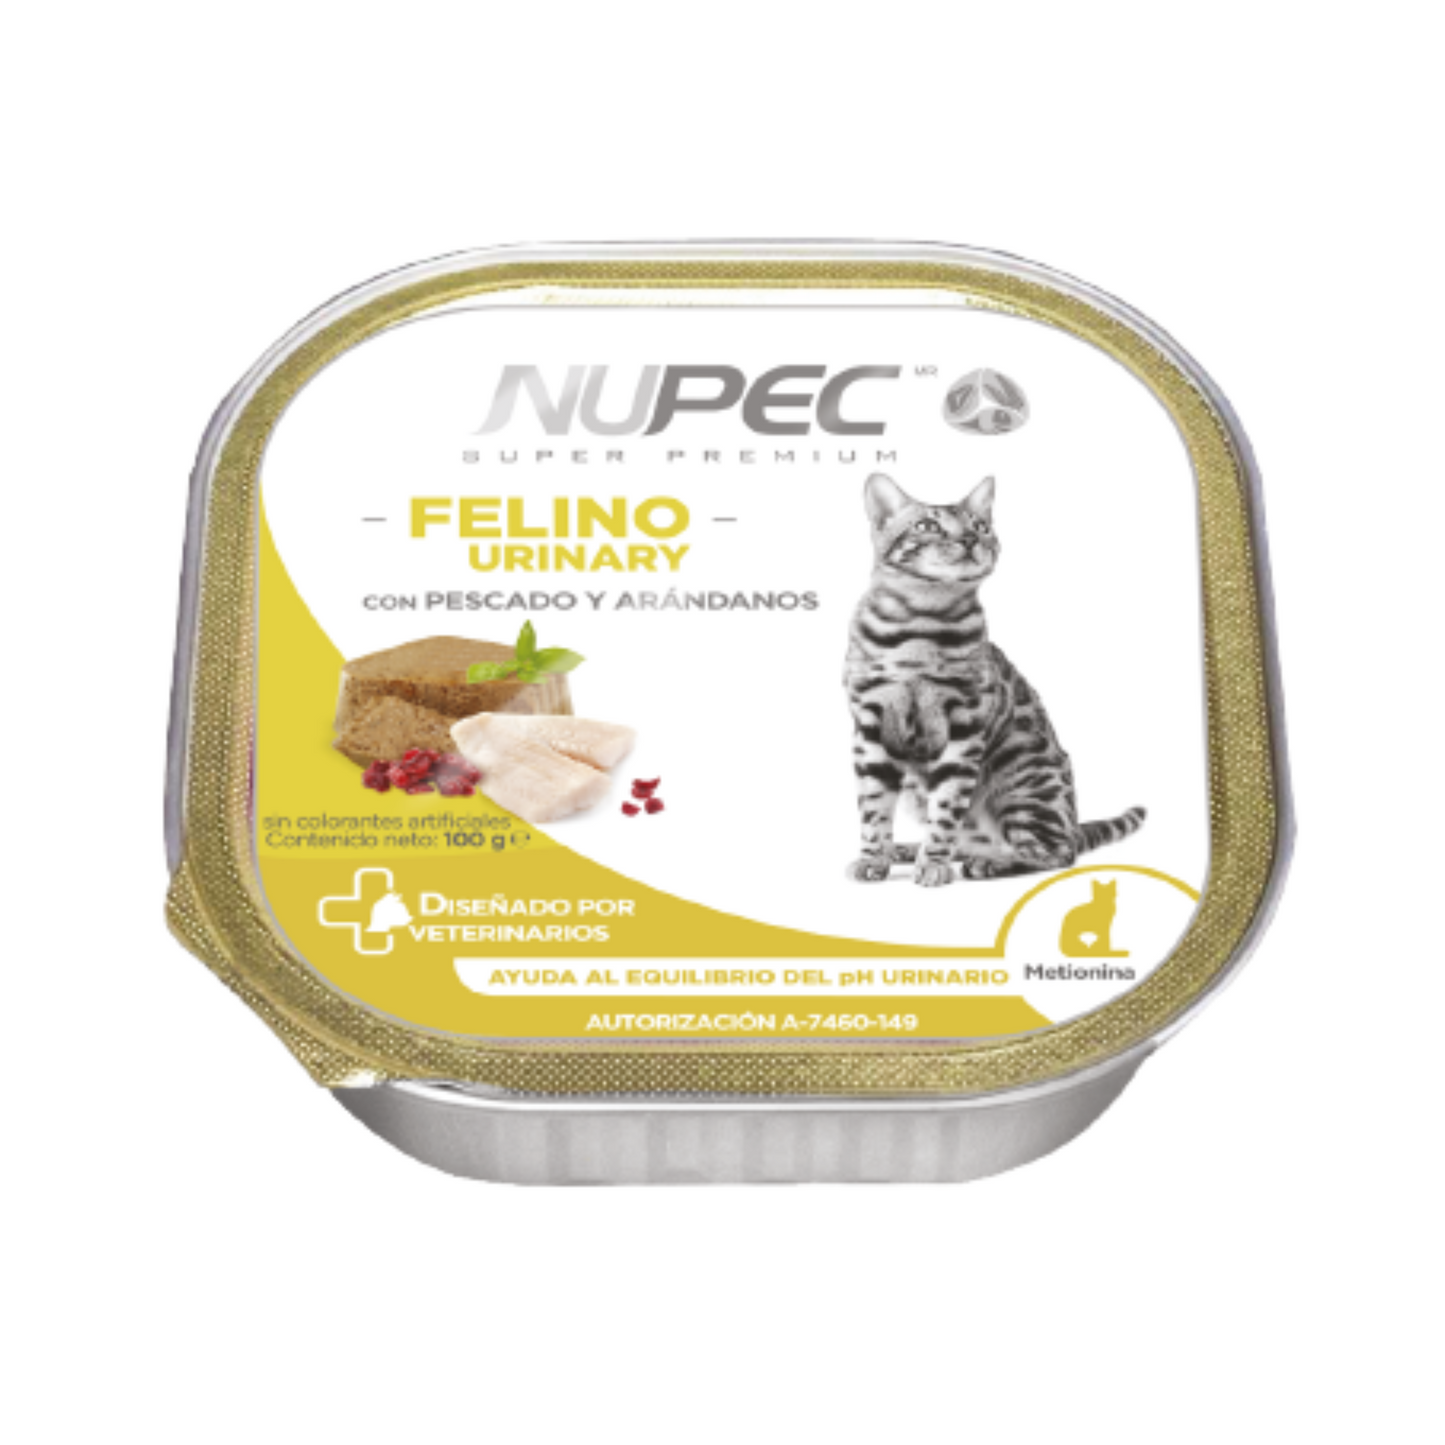 Nupec Felino Humedo Urinary/Hairball 4 X 100 Grs